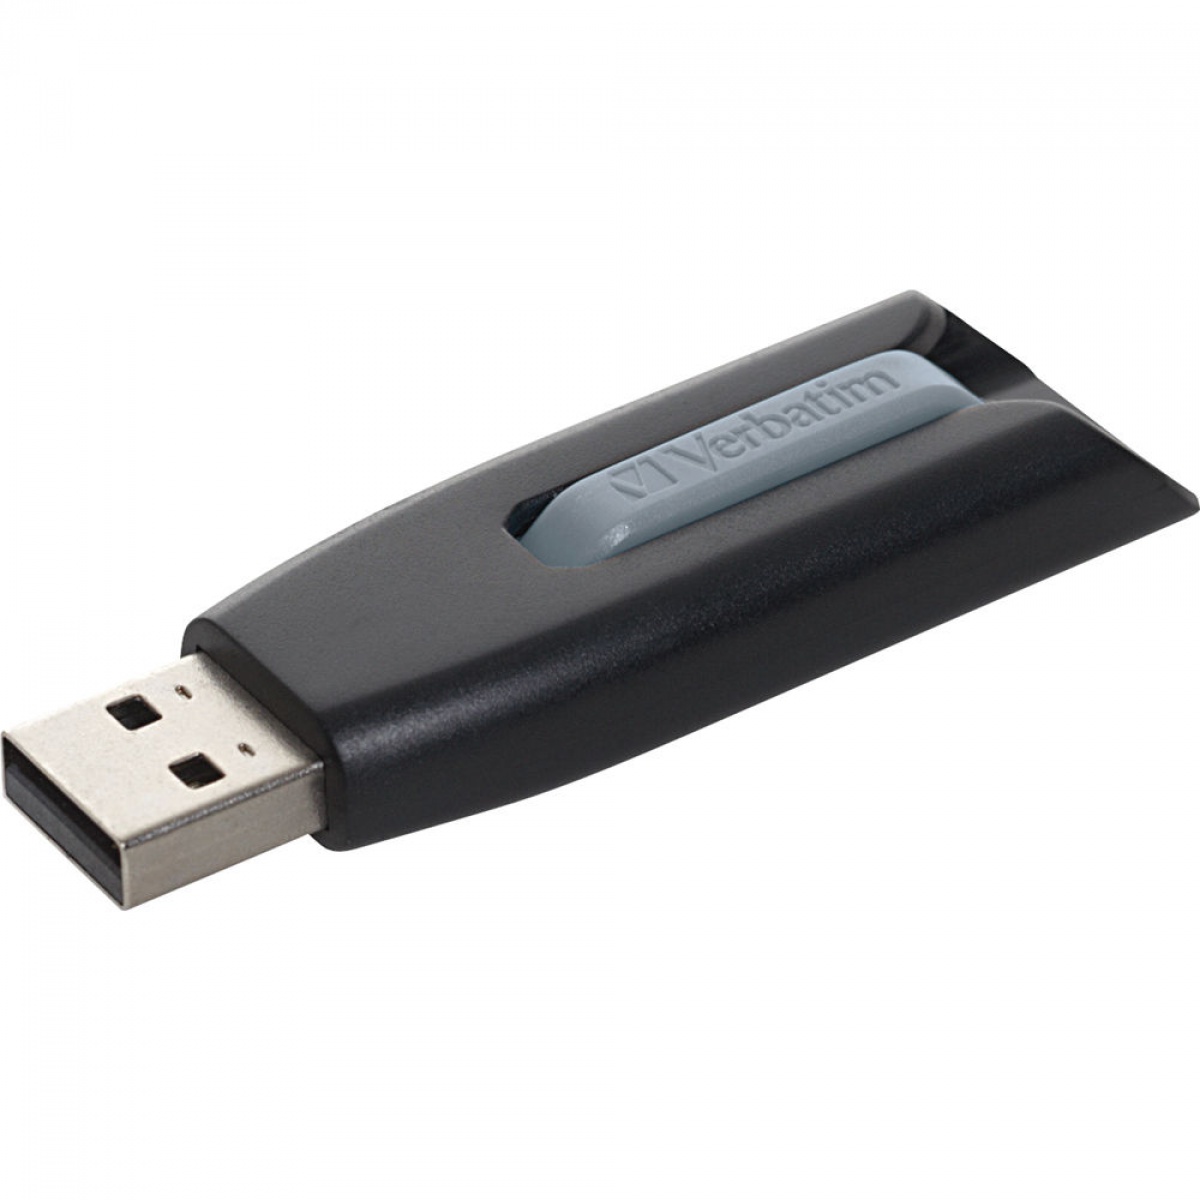 Memorie USB V3, 256 GB, USB 3.0